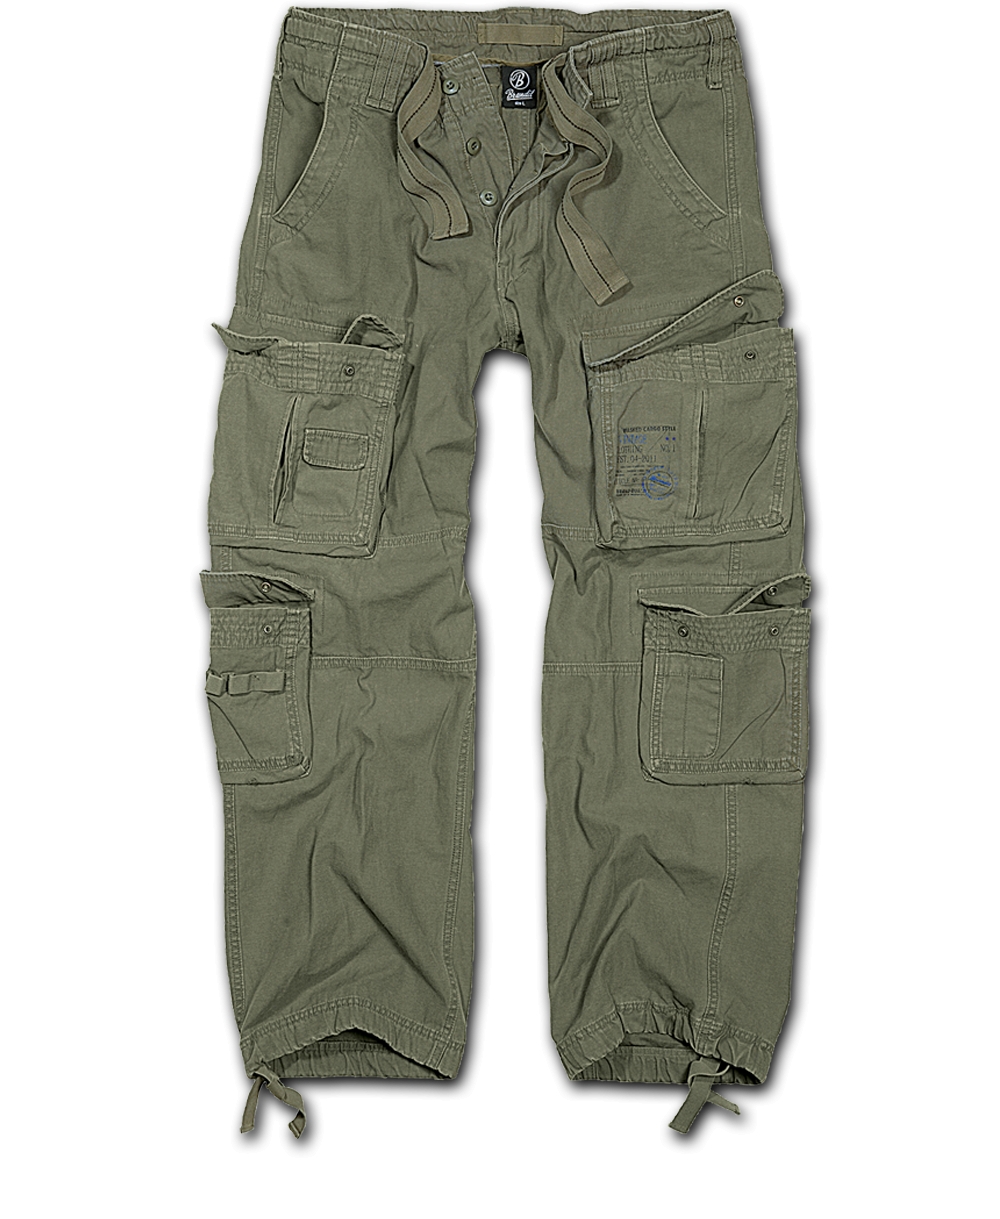 Kalhoty Brandit Pure Vintage - olivové, 5XL